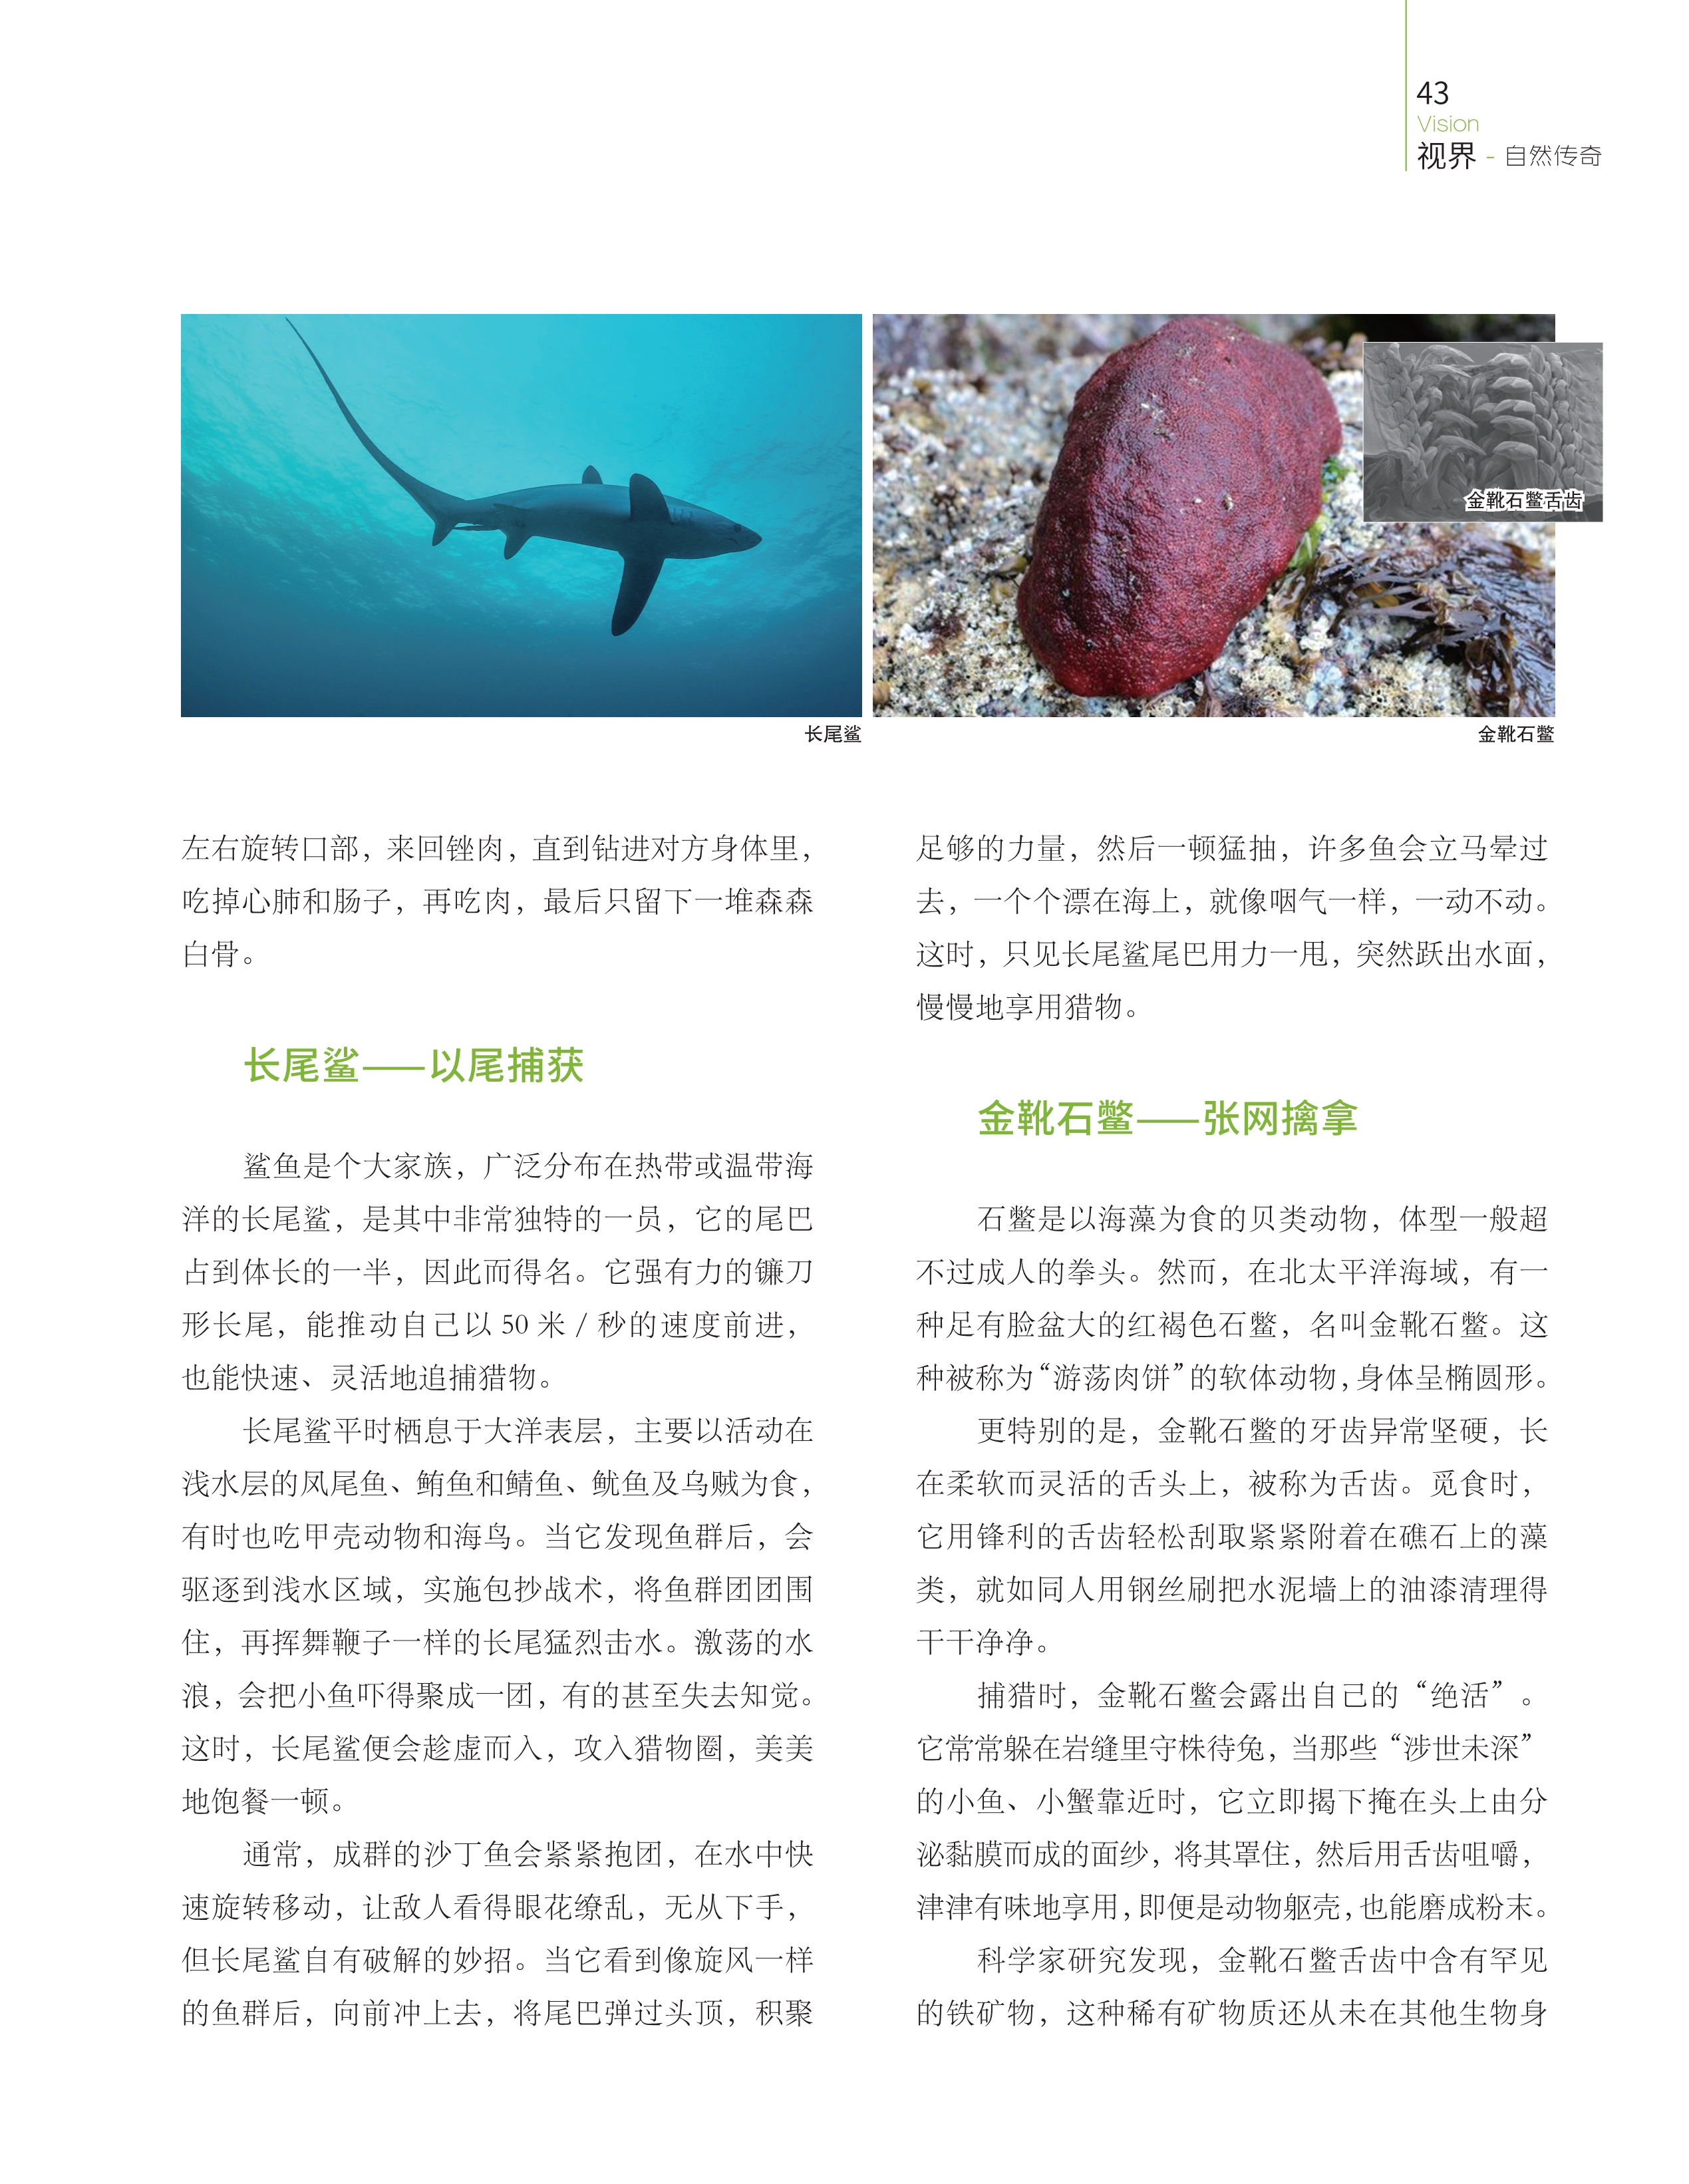 长尾鲨广泛分布在热带或温带海洋,石鳖是以海藻为食的贝类动物